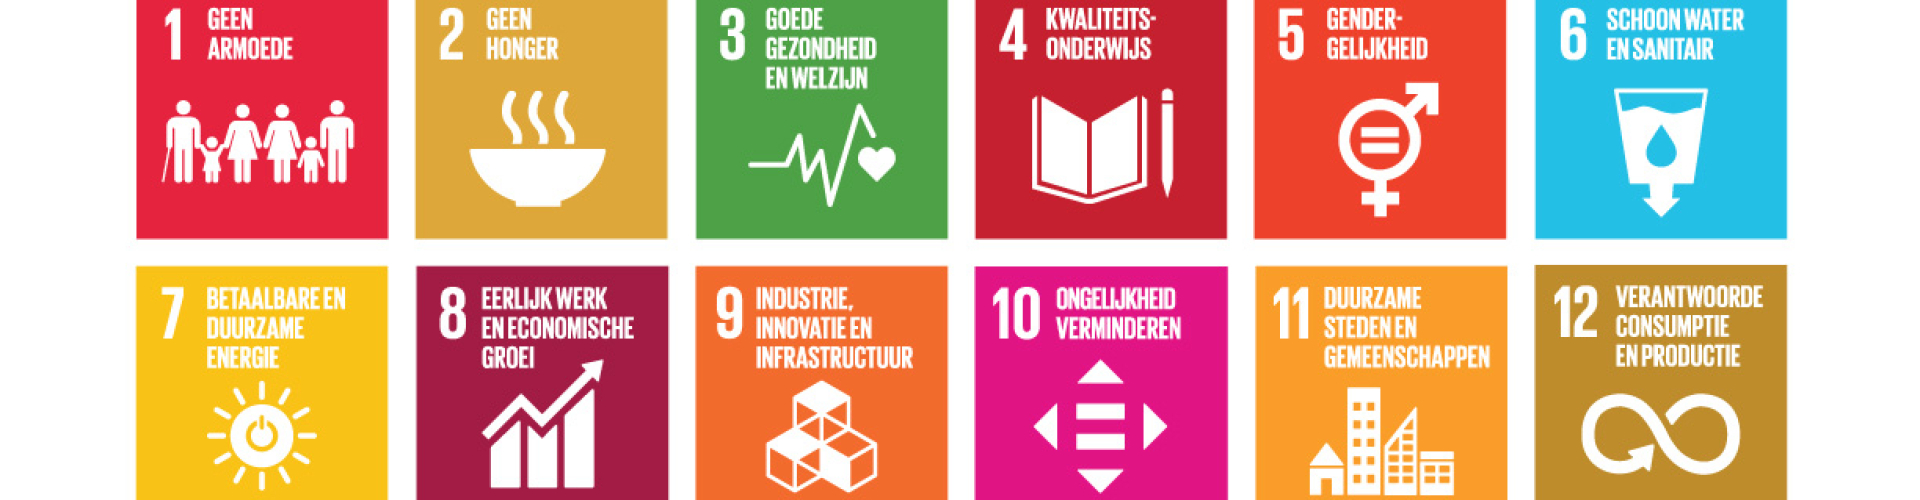 SDG Sustainable development goals SDG